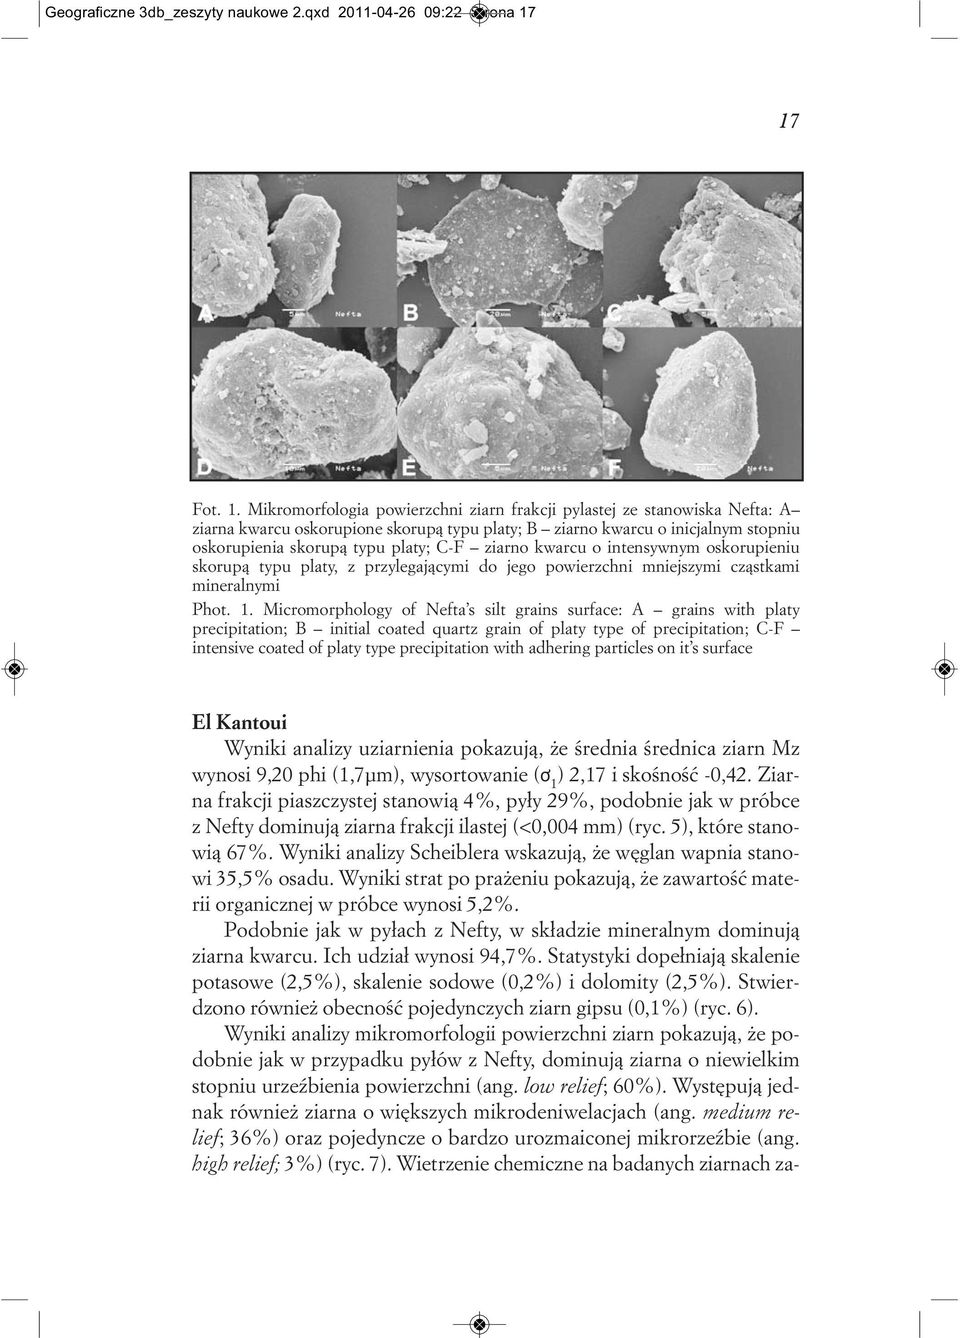 Mikromorfologia powierzchni ziarn frakcji pylastej ze stanowiska Nefta: A ziarna kwarcu oskorupione skorupą typu platy; B ziarno kwarcu o inicjalnym stopniu oskorupienia skorupą typu platy; C-F